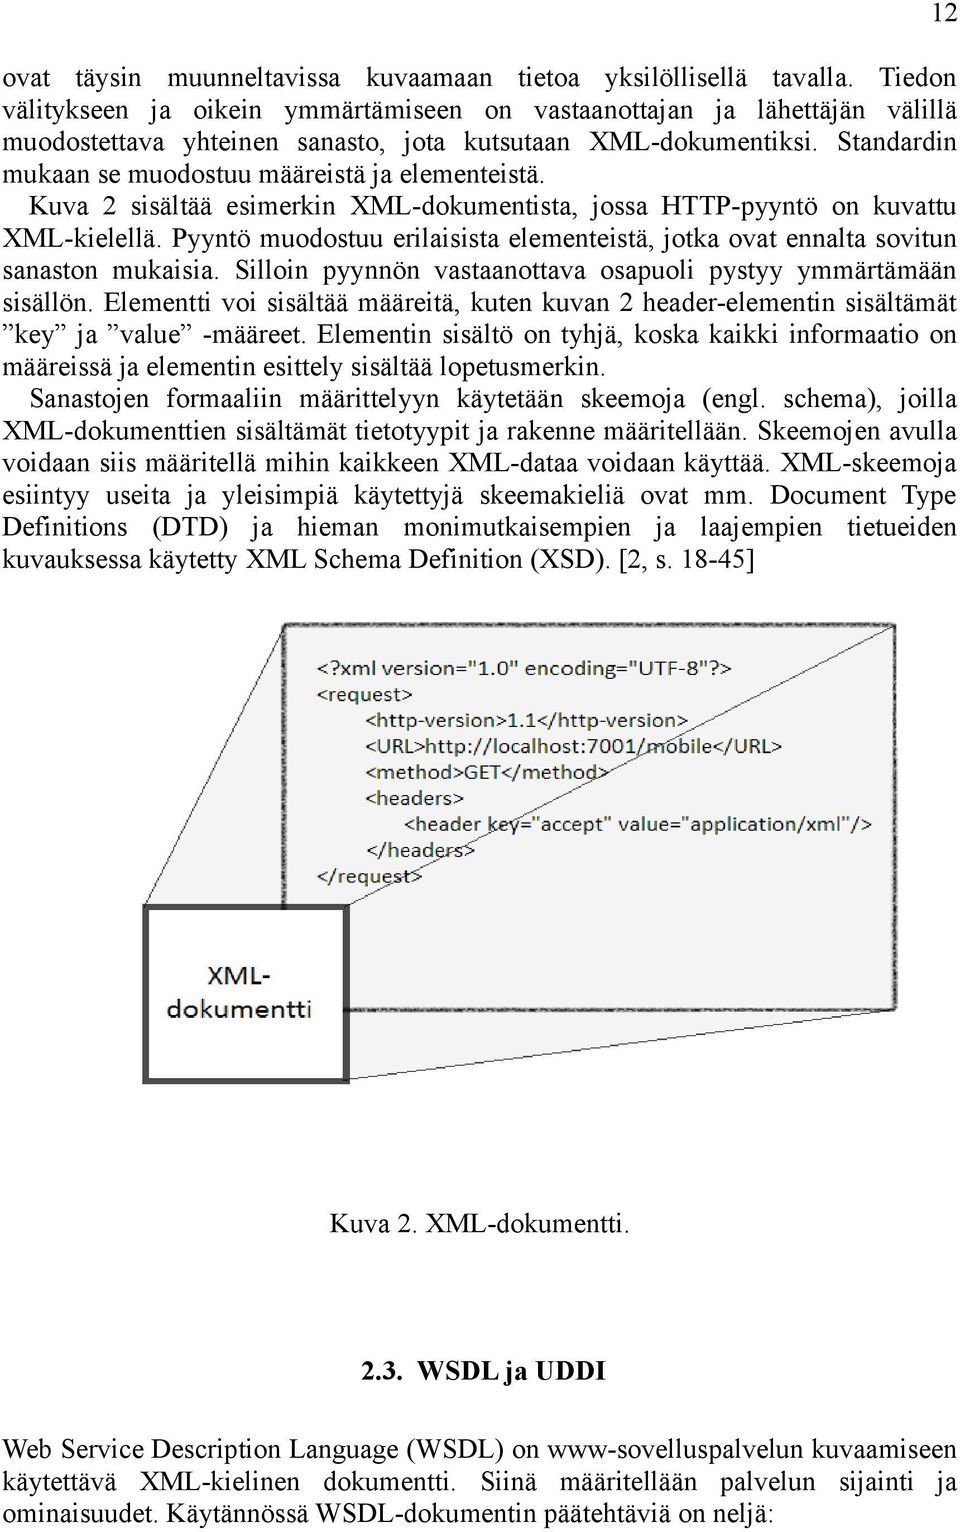 Standardin mukaan se muodostuu määreistä ja elementeistä. Kuva 2 sisältää esimerkin XML-dokumentista, jossa HTTP-pyyntö on kuvattu XML-kielellä.